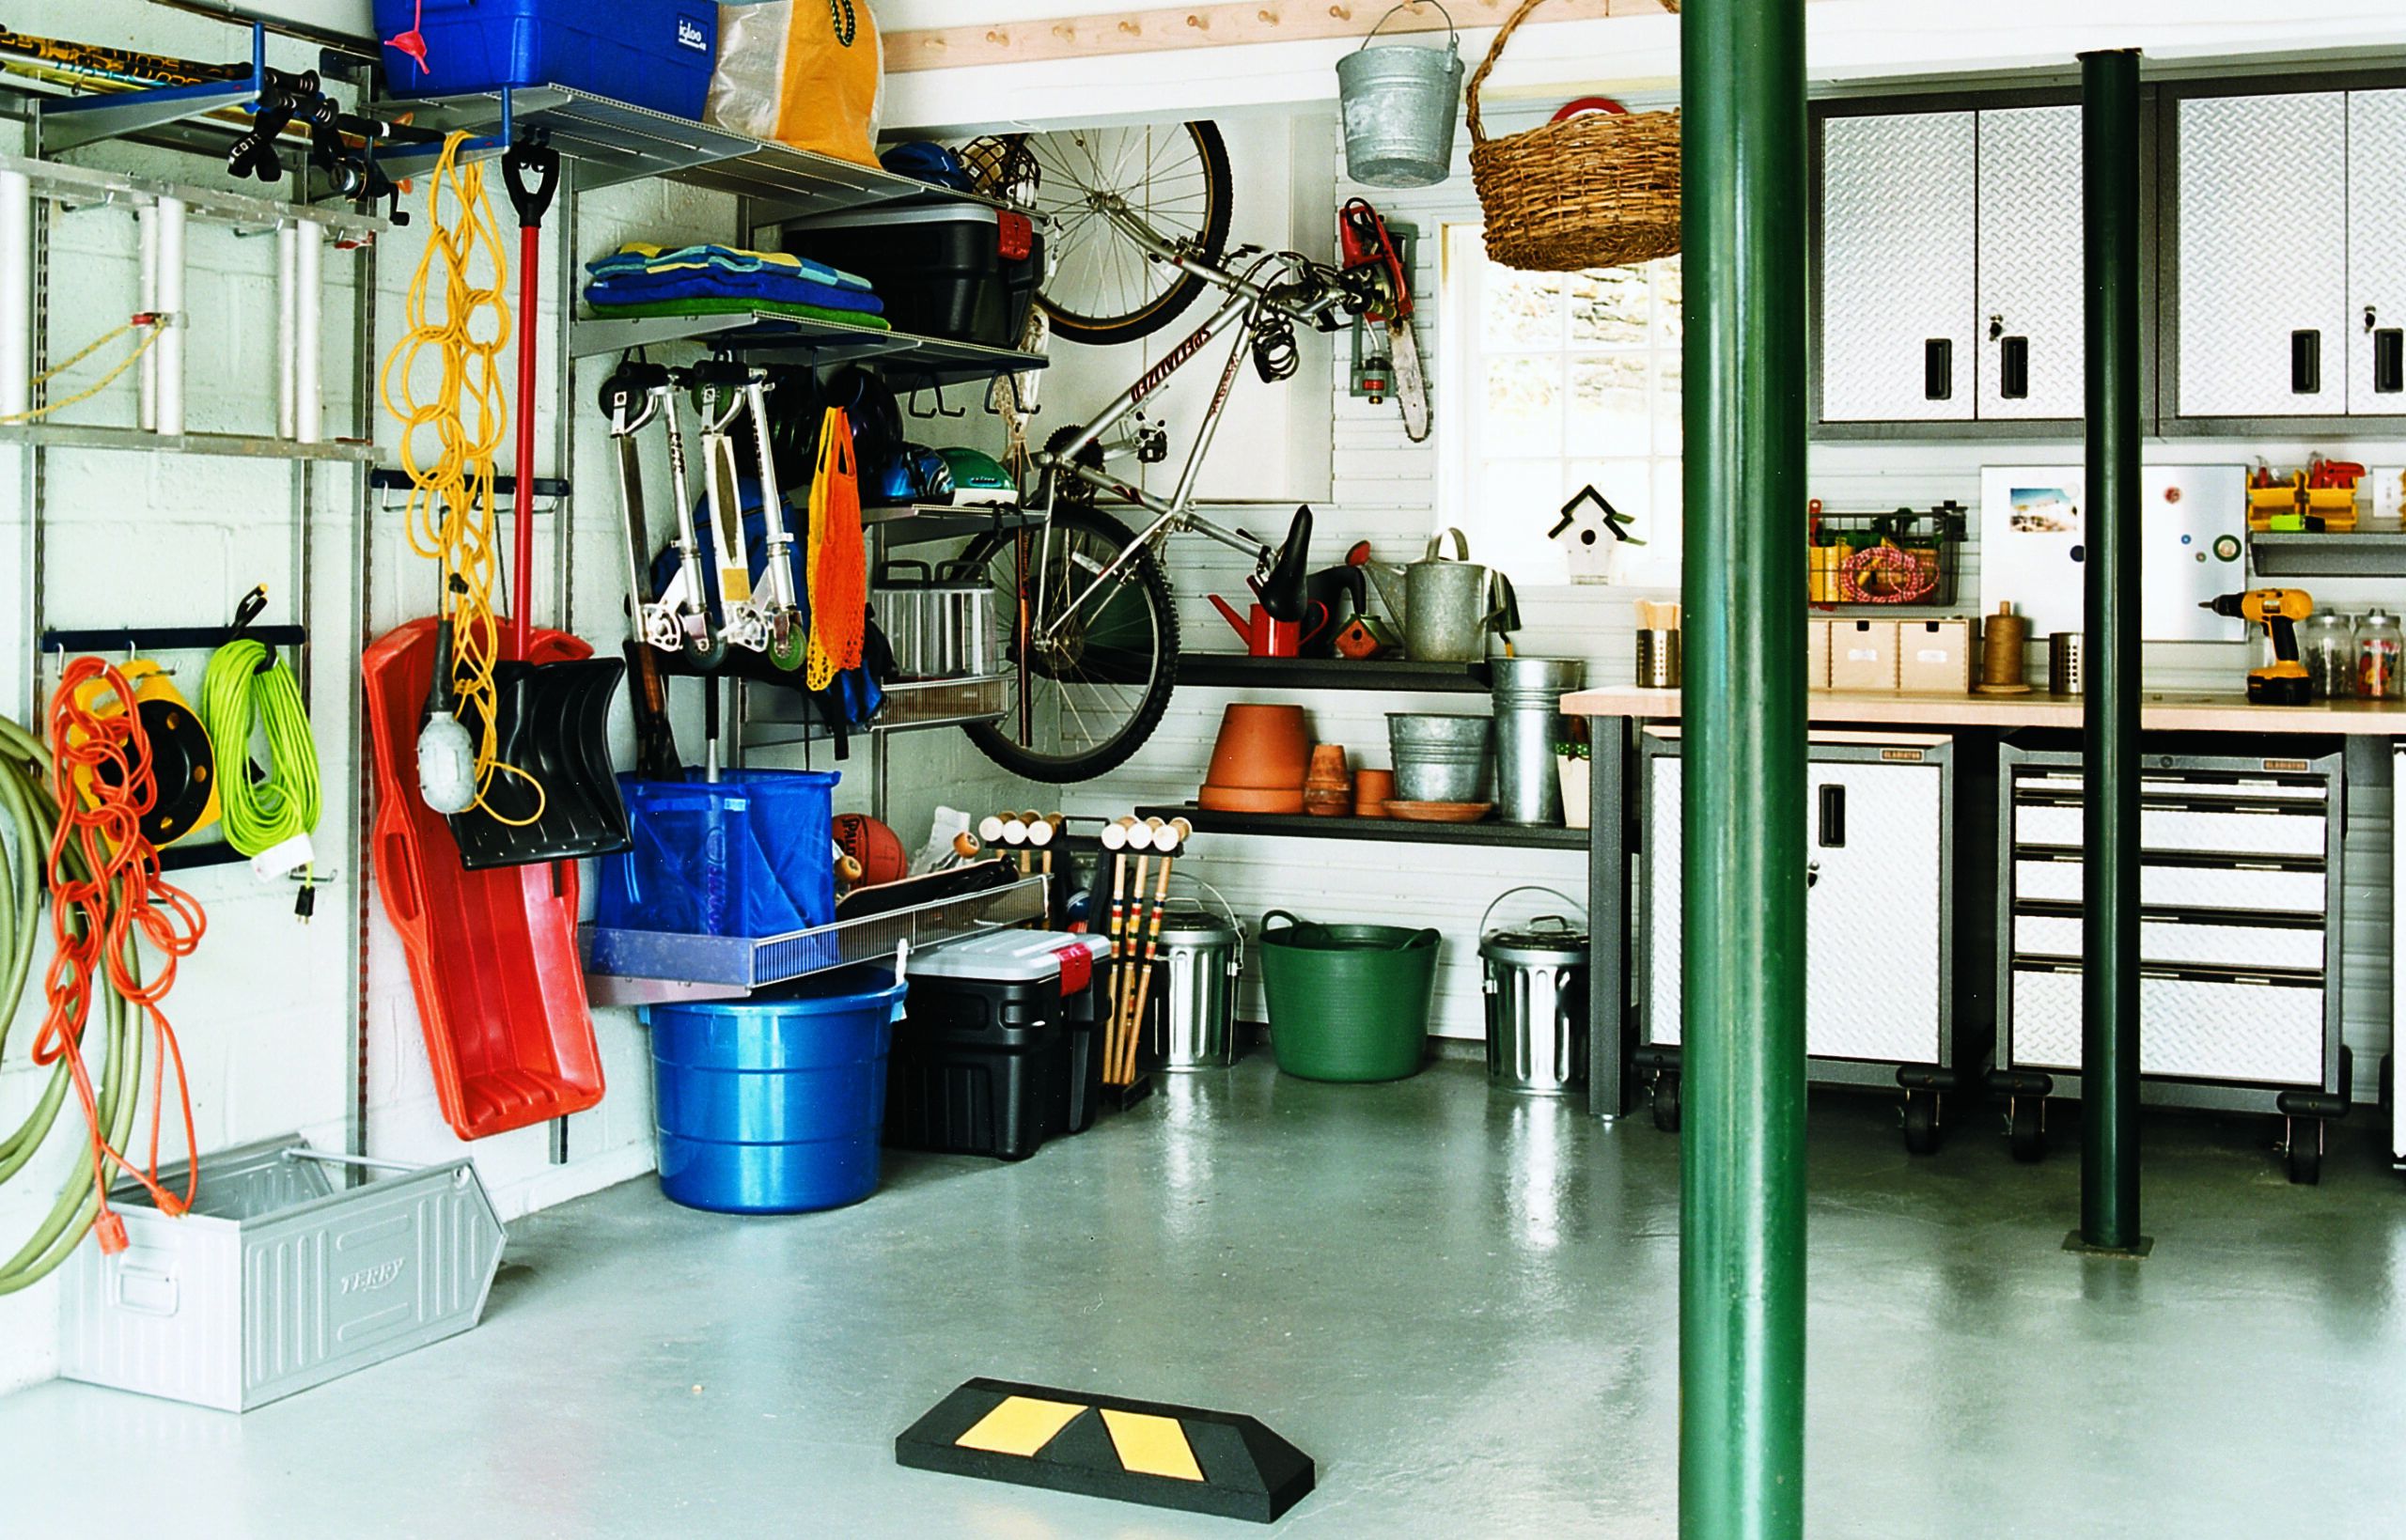 Garage Organization That Gets Stuff OFF the Floor